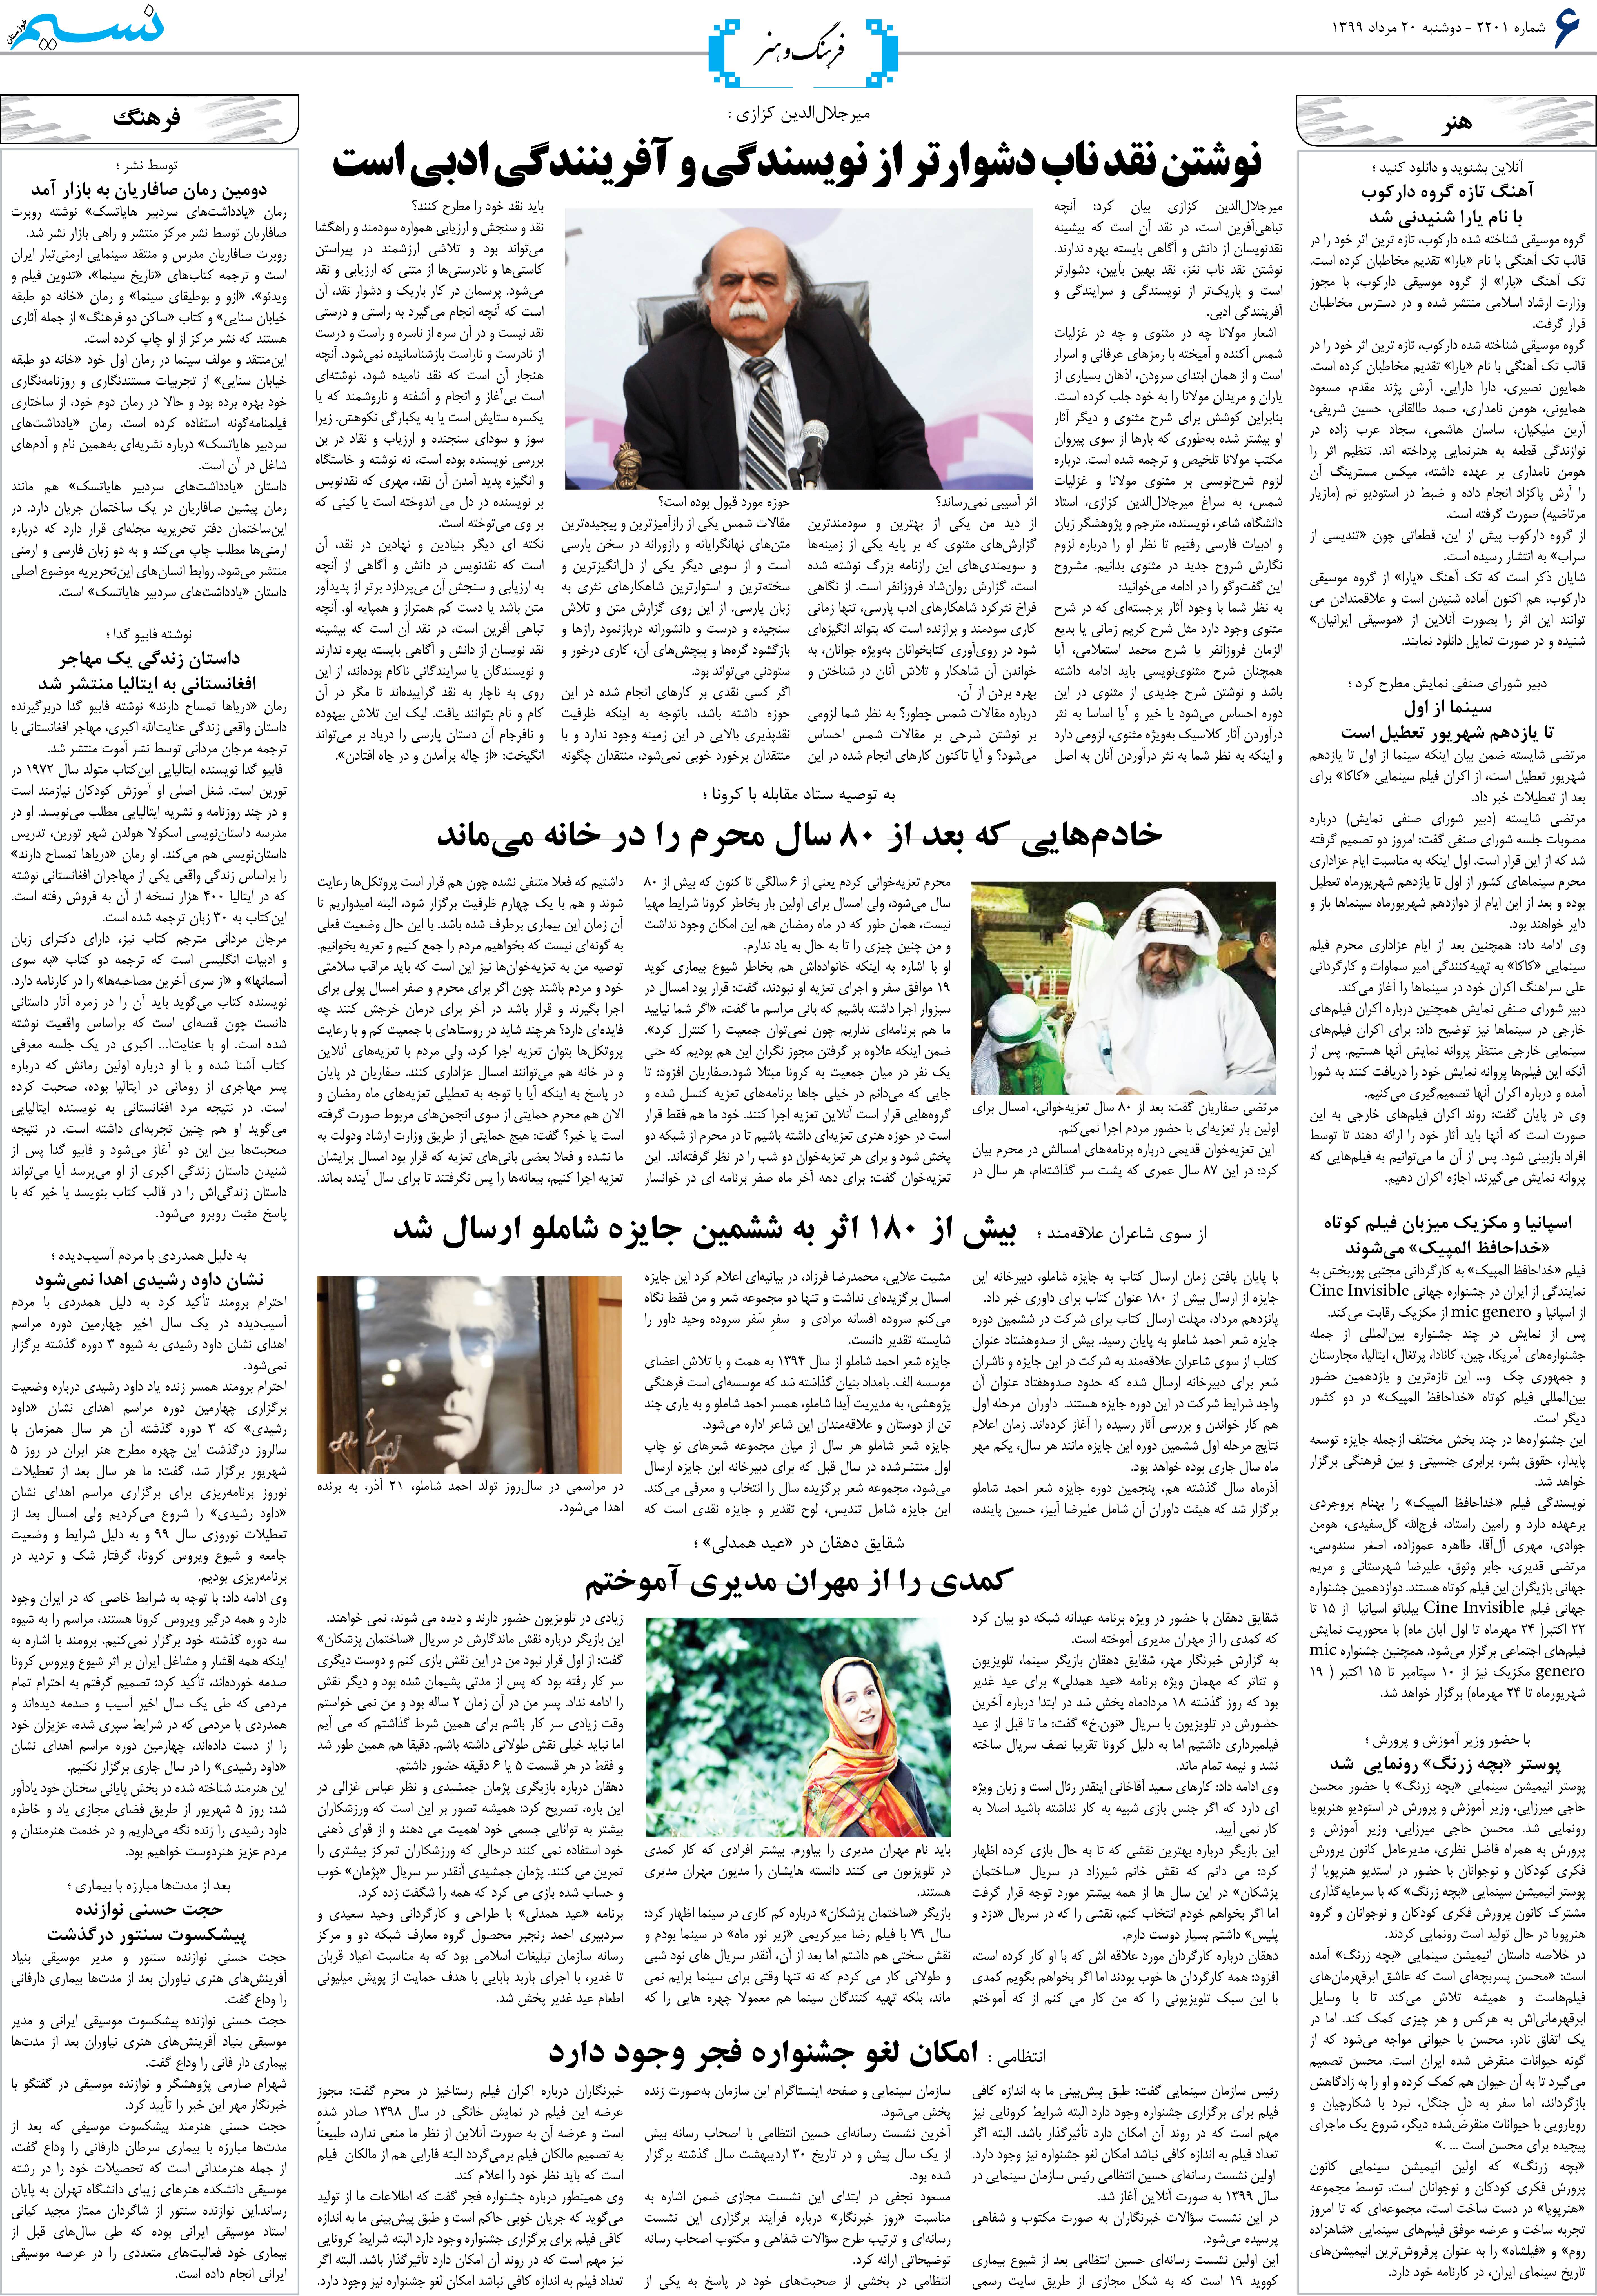 صفحه فرهنگ و هنر روزنامه نسیم شماره 2201